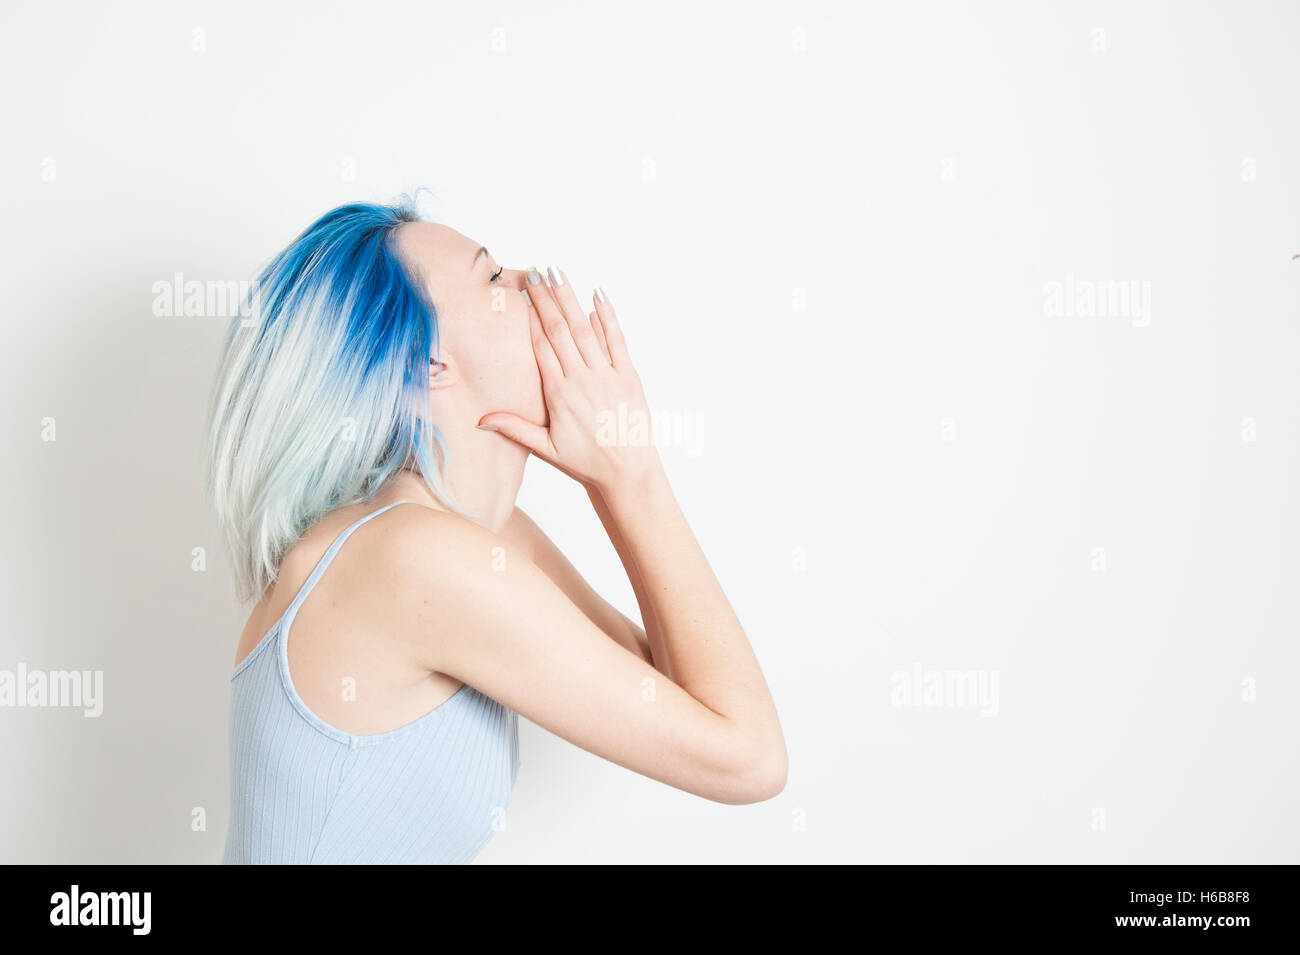 Junge Teen Frau im Hochformat von Seite, mit Weinen zu öffnen auf Mund und Hände herum, weißer Hintergrund Stockfoto